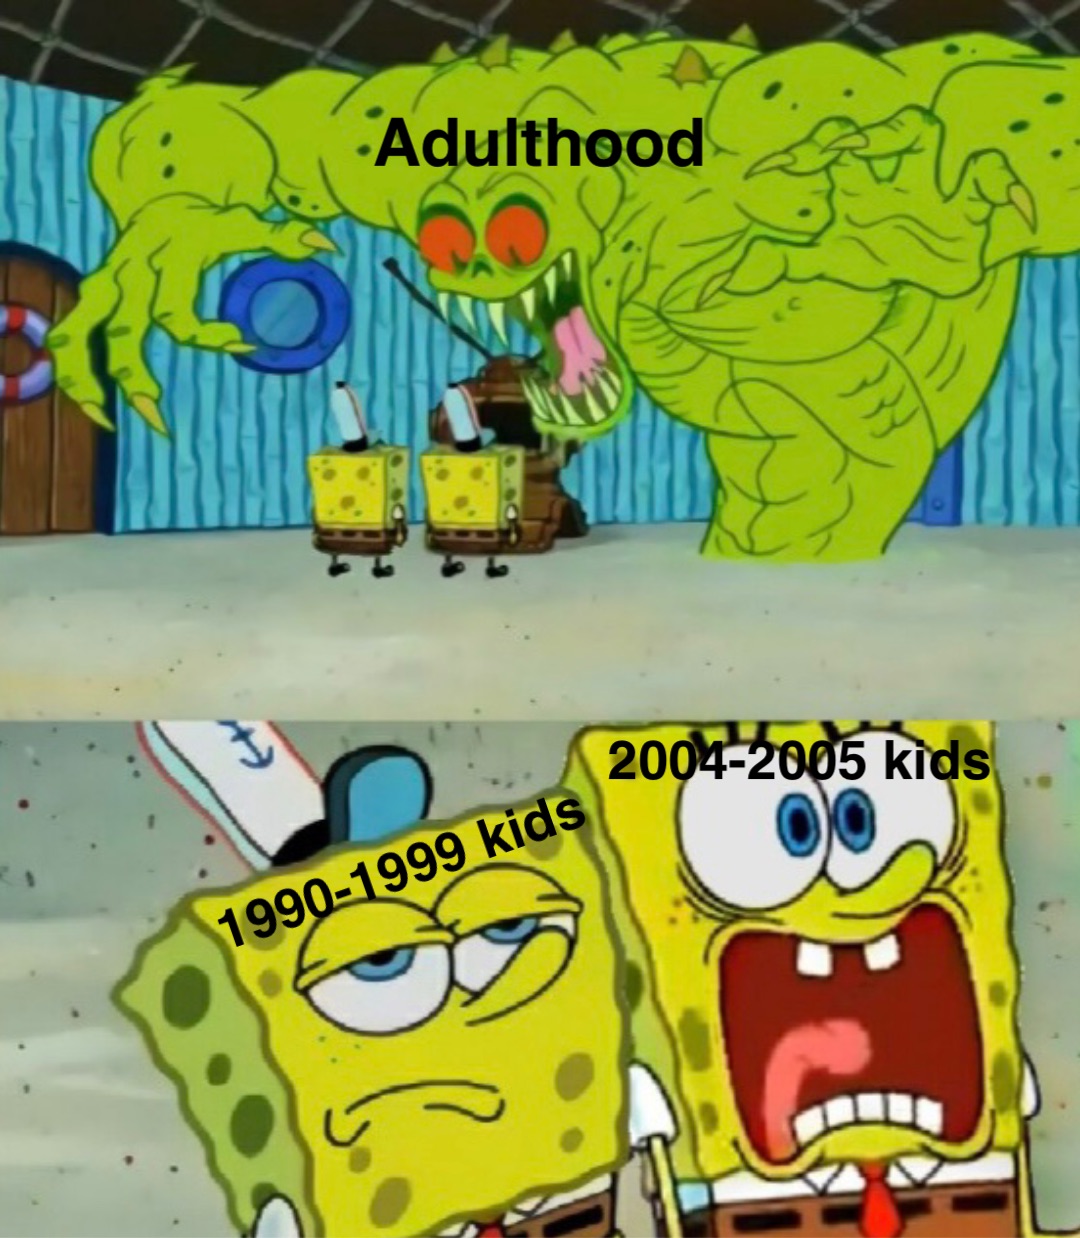 Adulthood 1990-1999 kids 2004-2005 kids